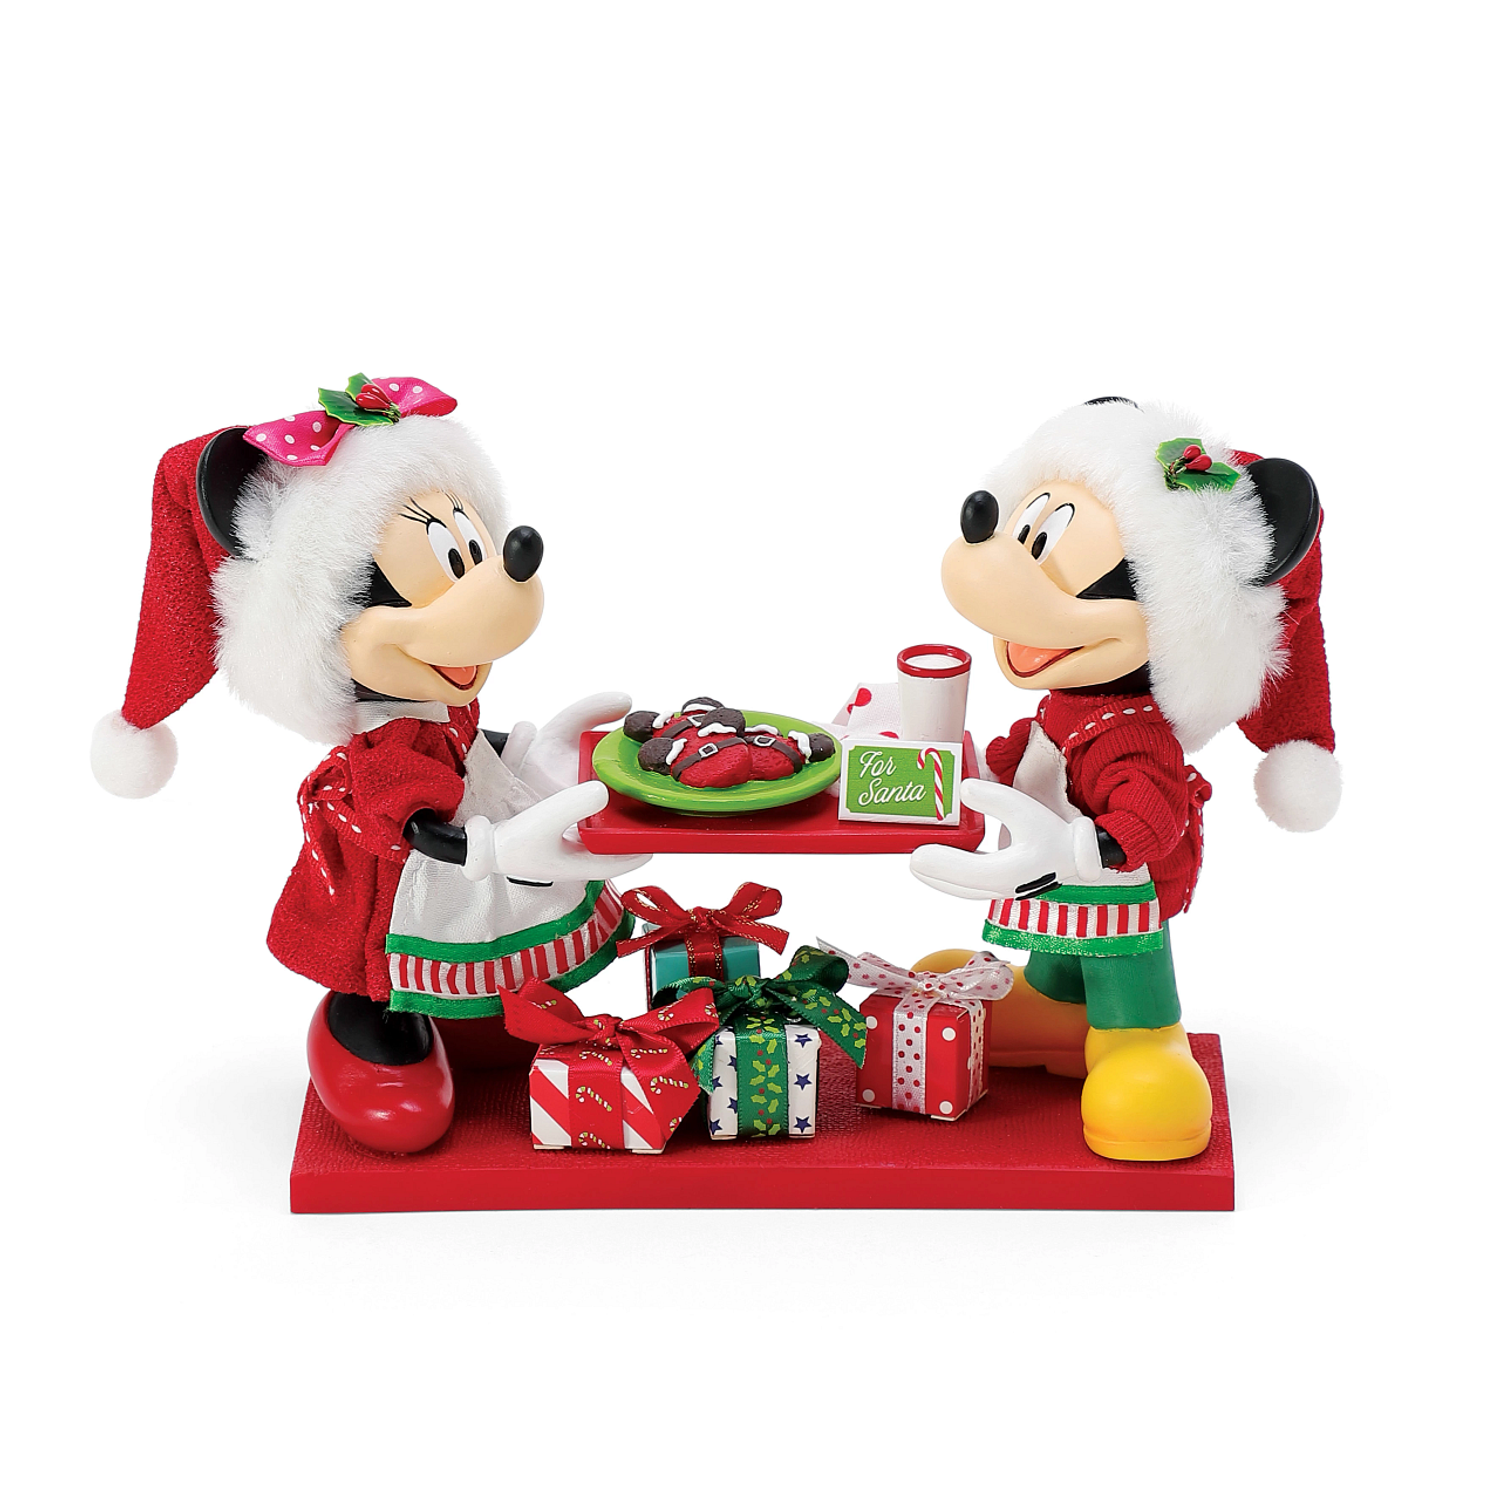 Santa Mickey wine glasses $6.99 @homegoods #homegoods #homegoodsfinds  #homegoodsfind #homegoodsdisney #homegoodsdisneyfinds #disneyfind…